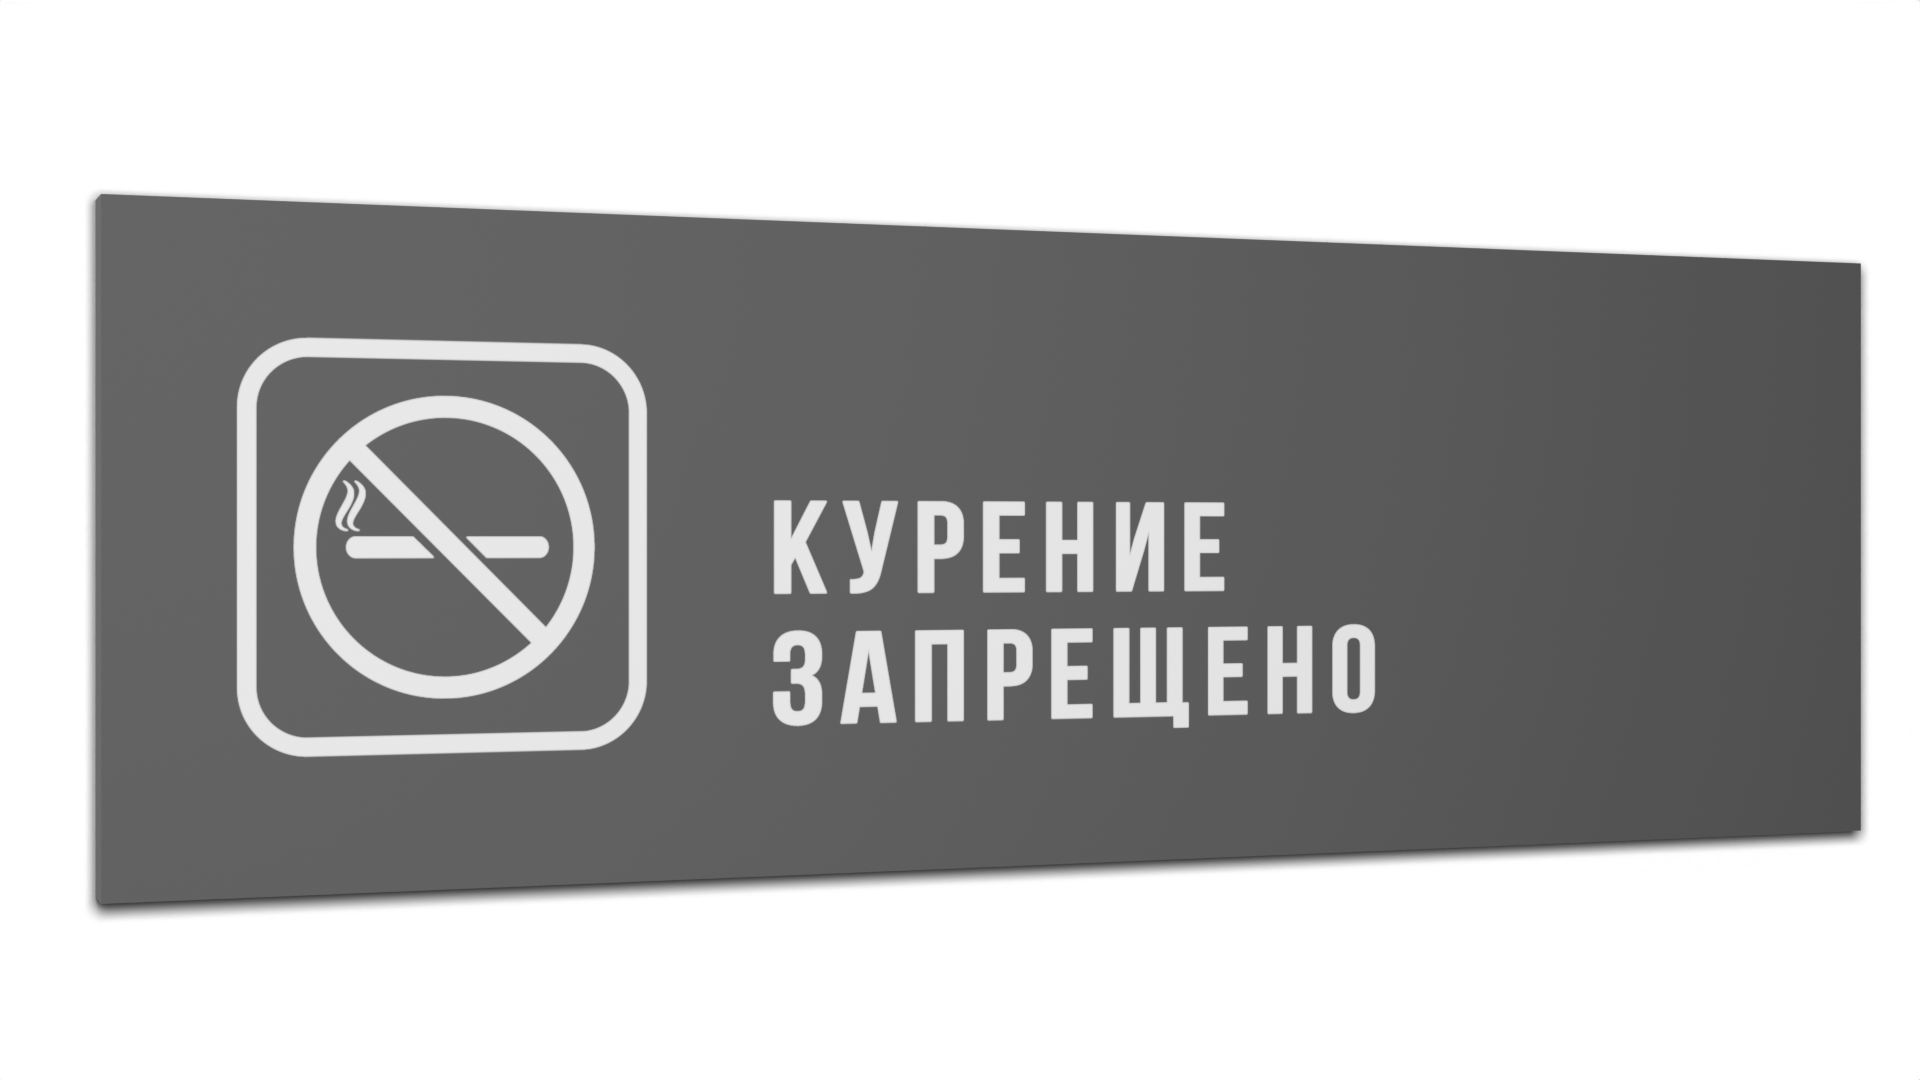 Табличка Курение запрещено, Серая матовая, 30 см х 10 см платье с аппликацией